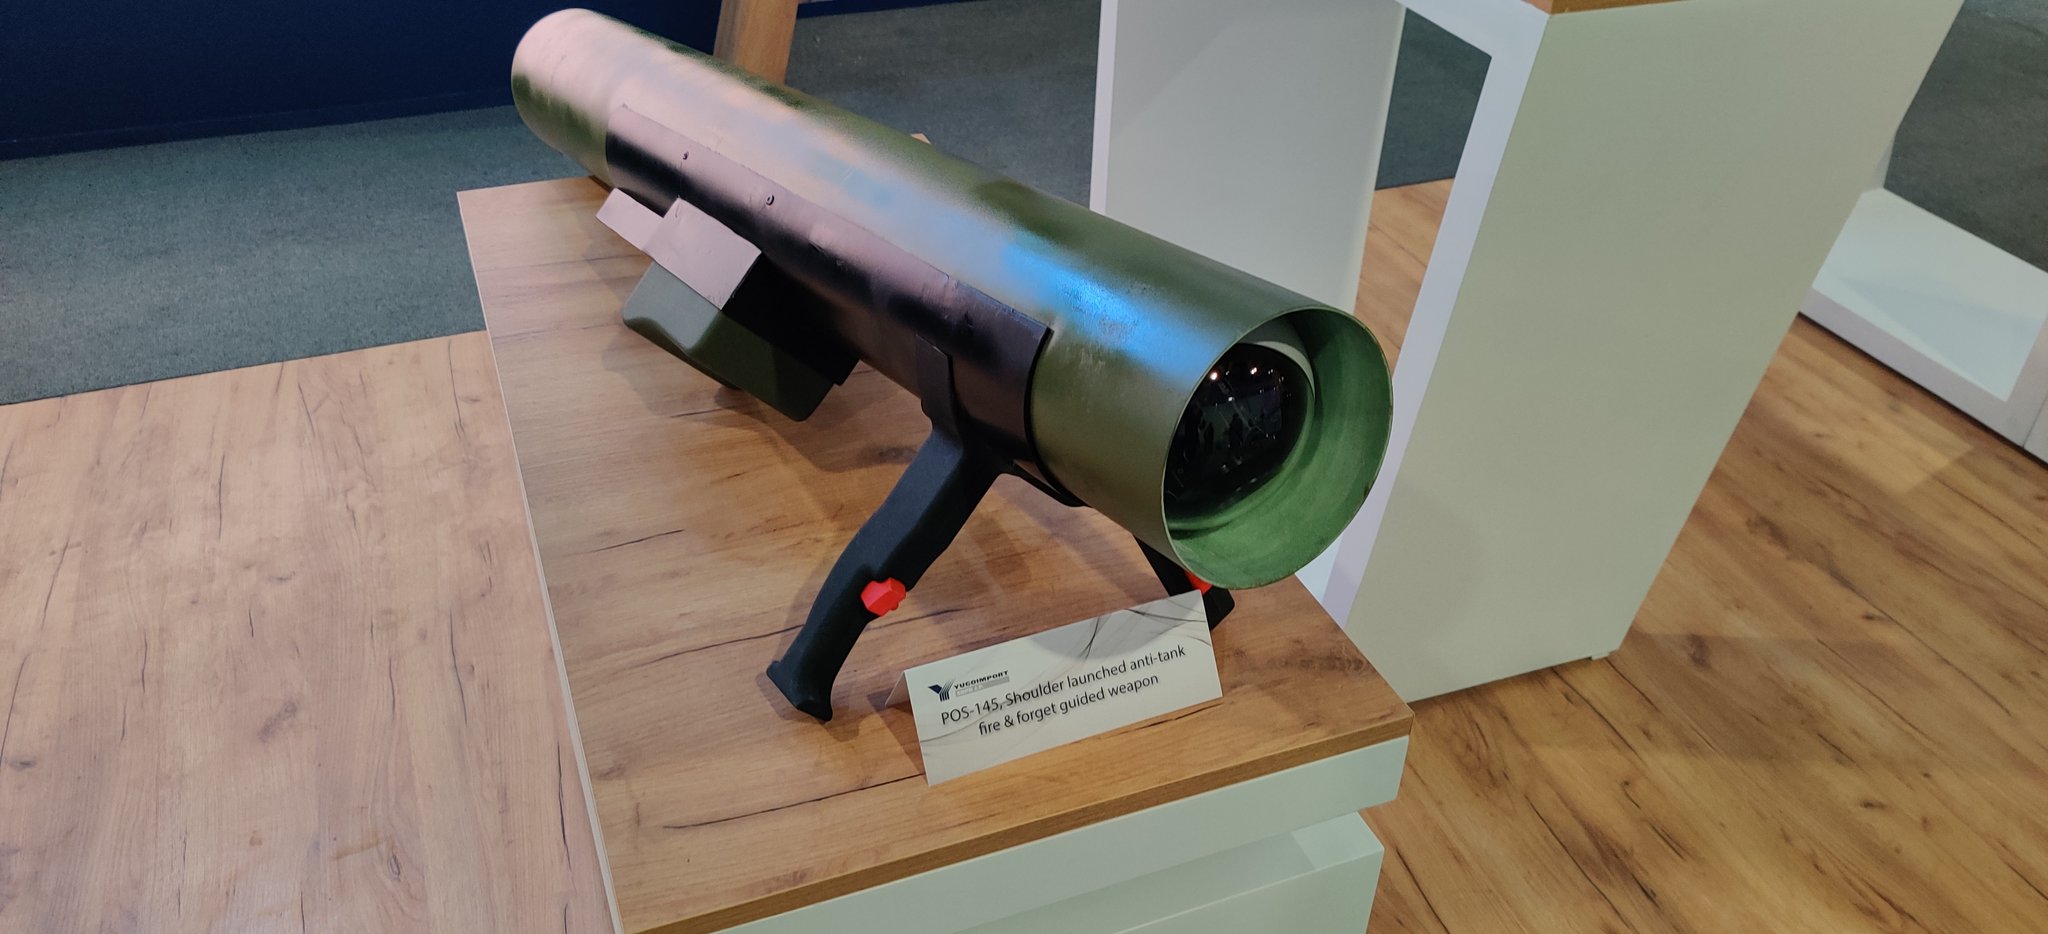 POS 145: Ο νέος σερβικός Α/Τ πύραυλος που ήρθε για να ανταγωνιστεί τον αμερικανικό Javelin